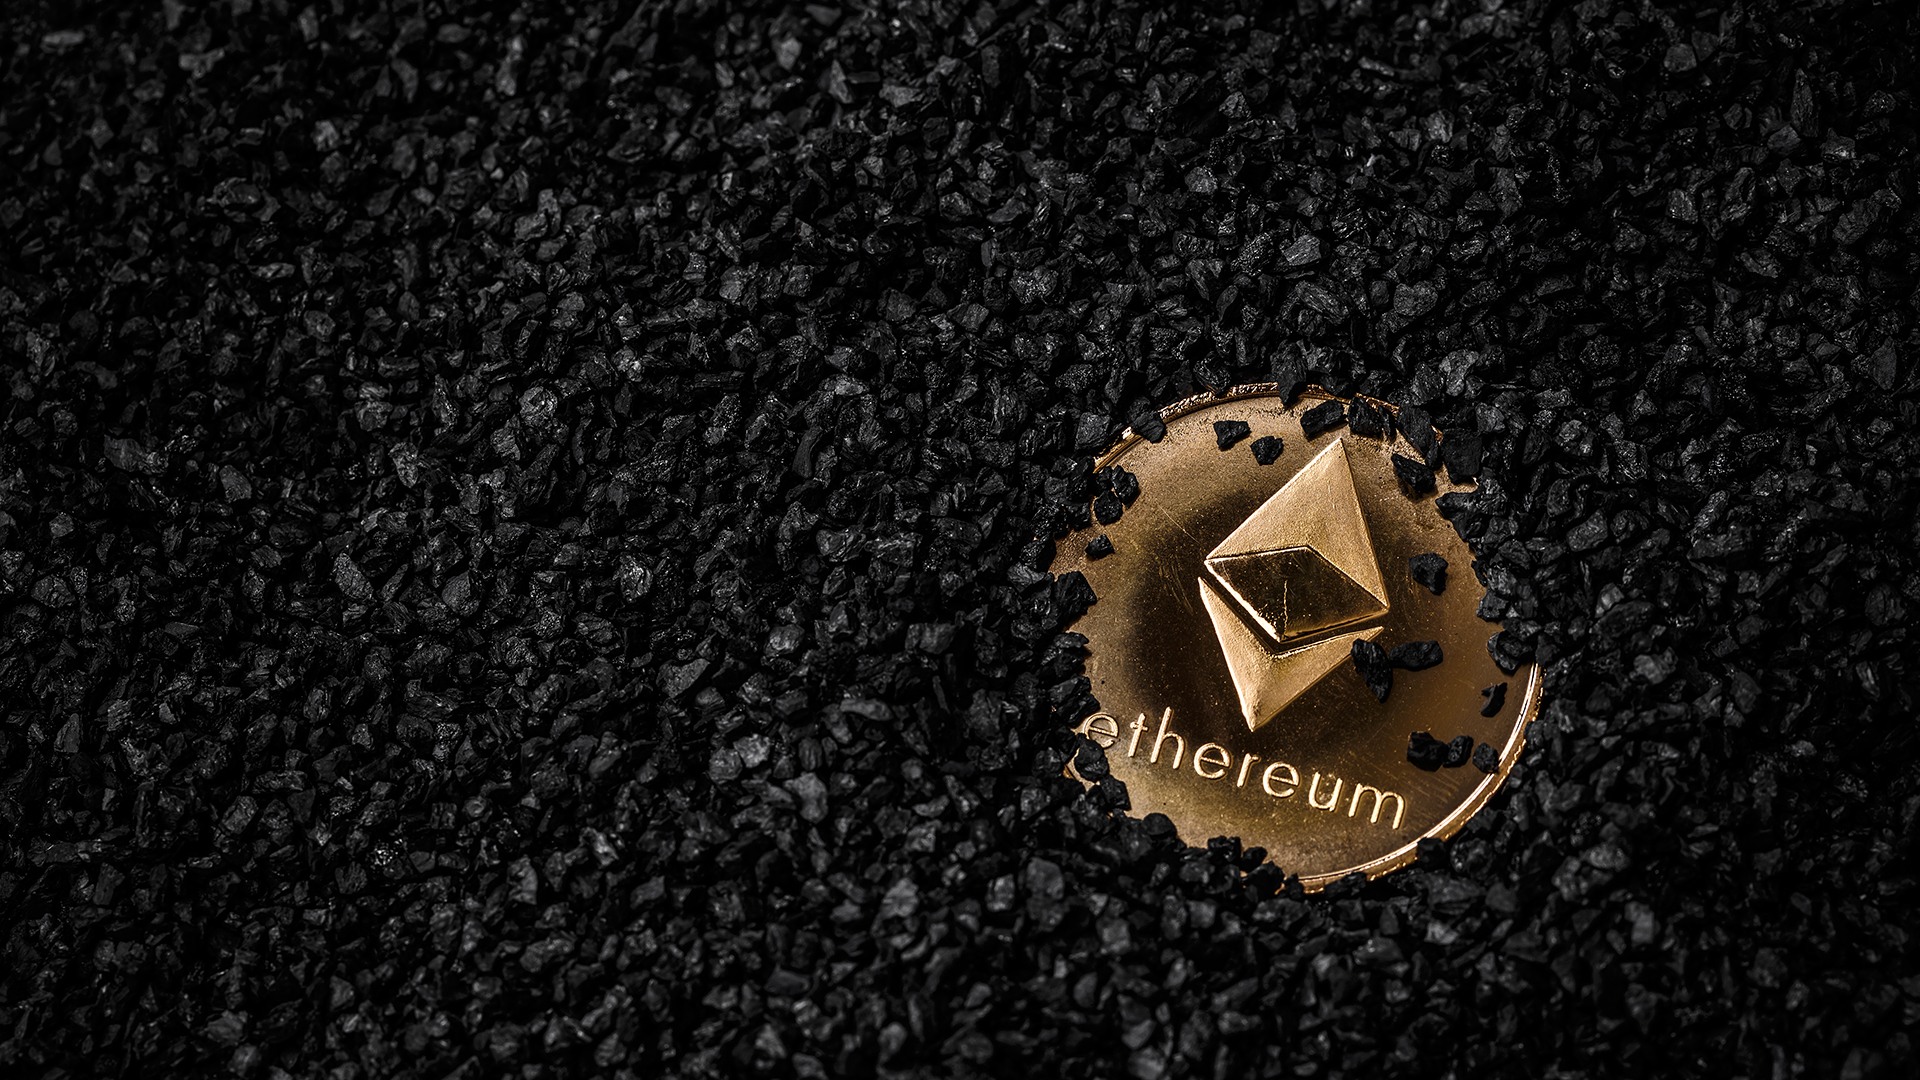 Οι miners του Ethereum αφήνουν το κρυπτονόμισμα λιγότερο από 24 ώρες μετά τη συγχώνευση